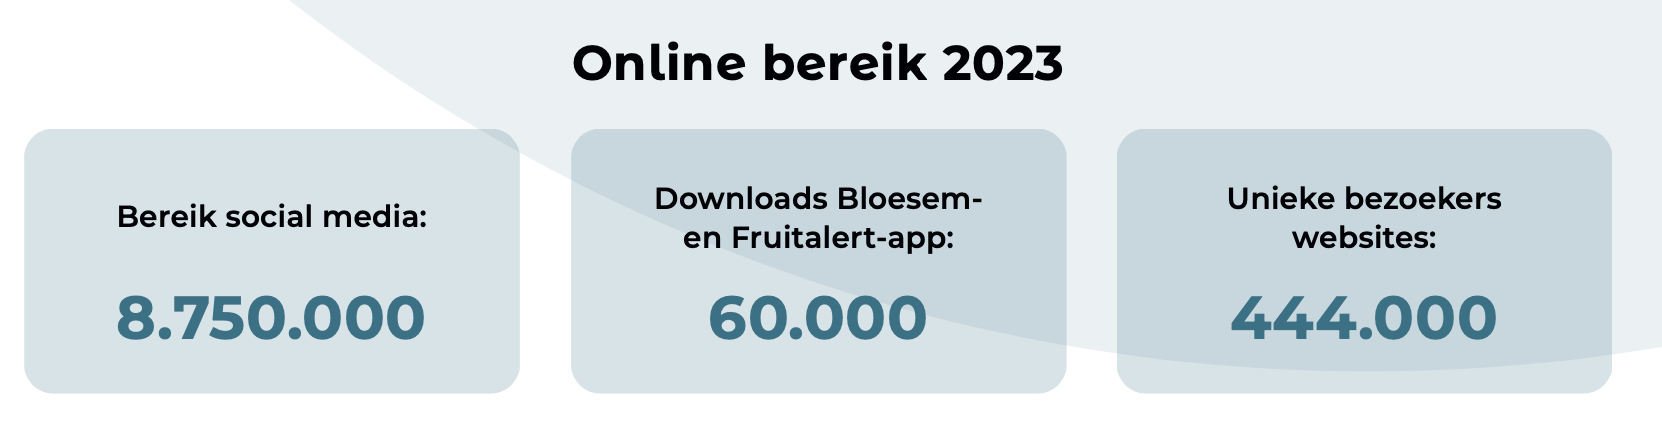 Online bereik 2023